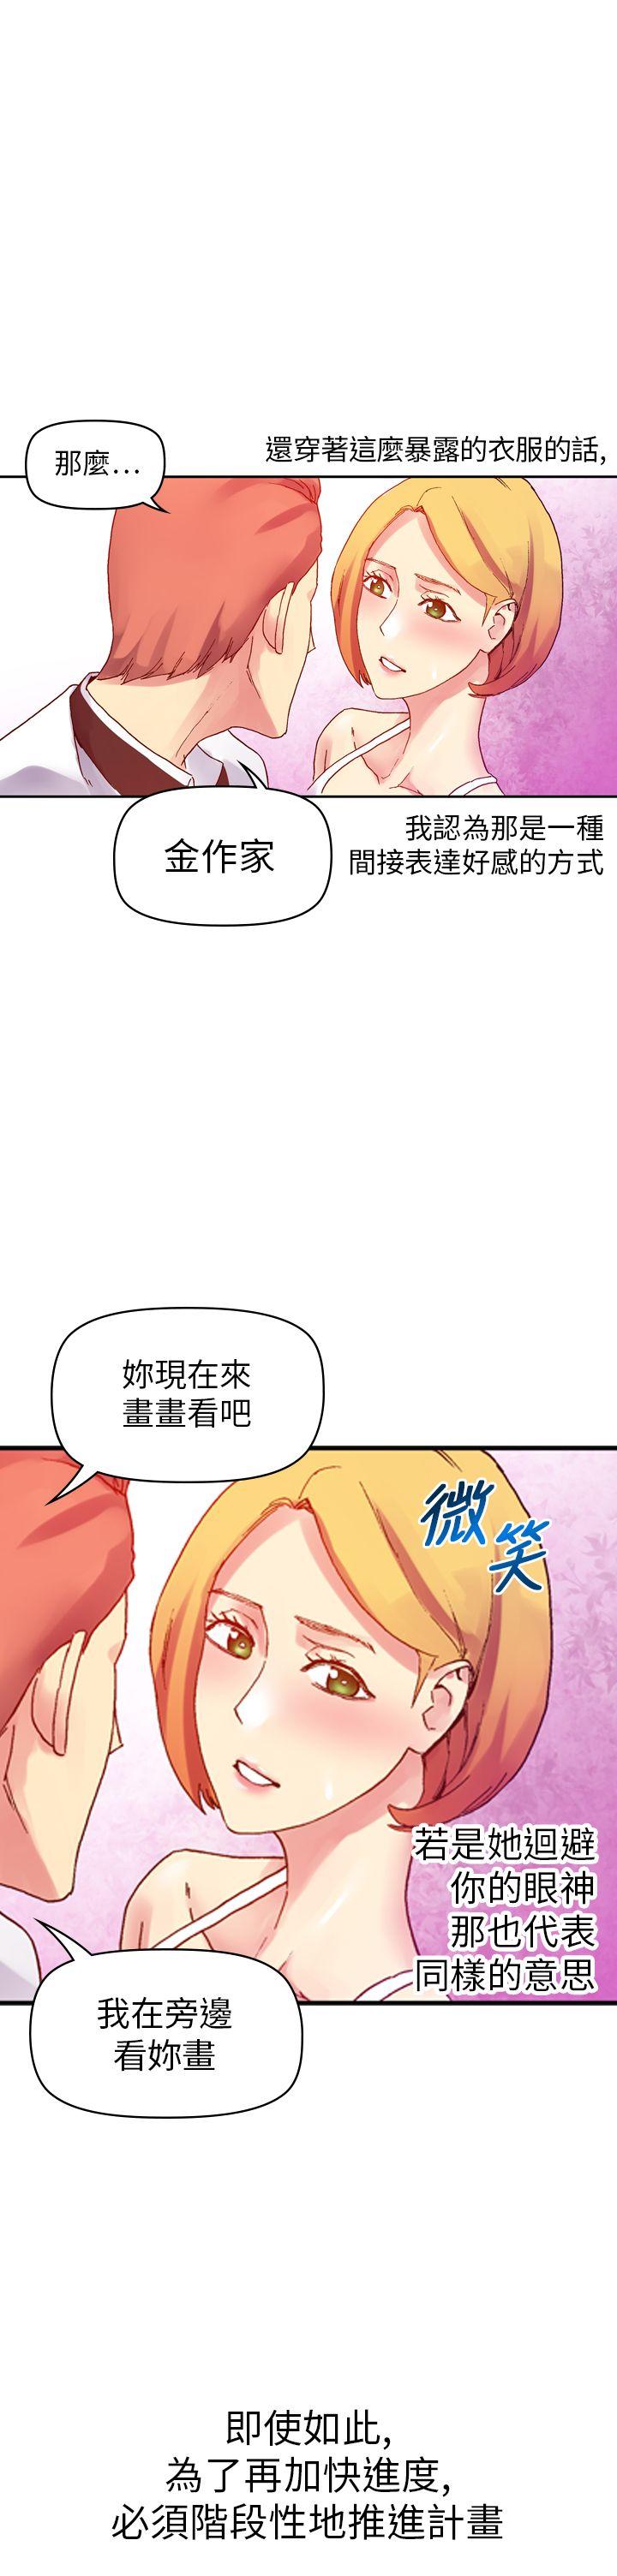 韩国污漫画 幻想中的她(完結) 第10话 35